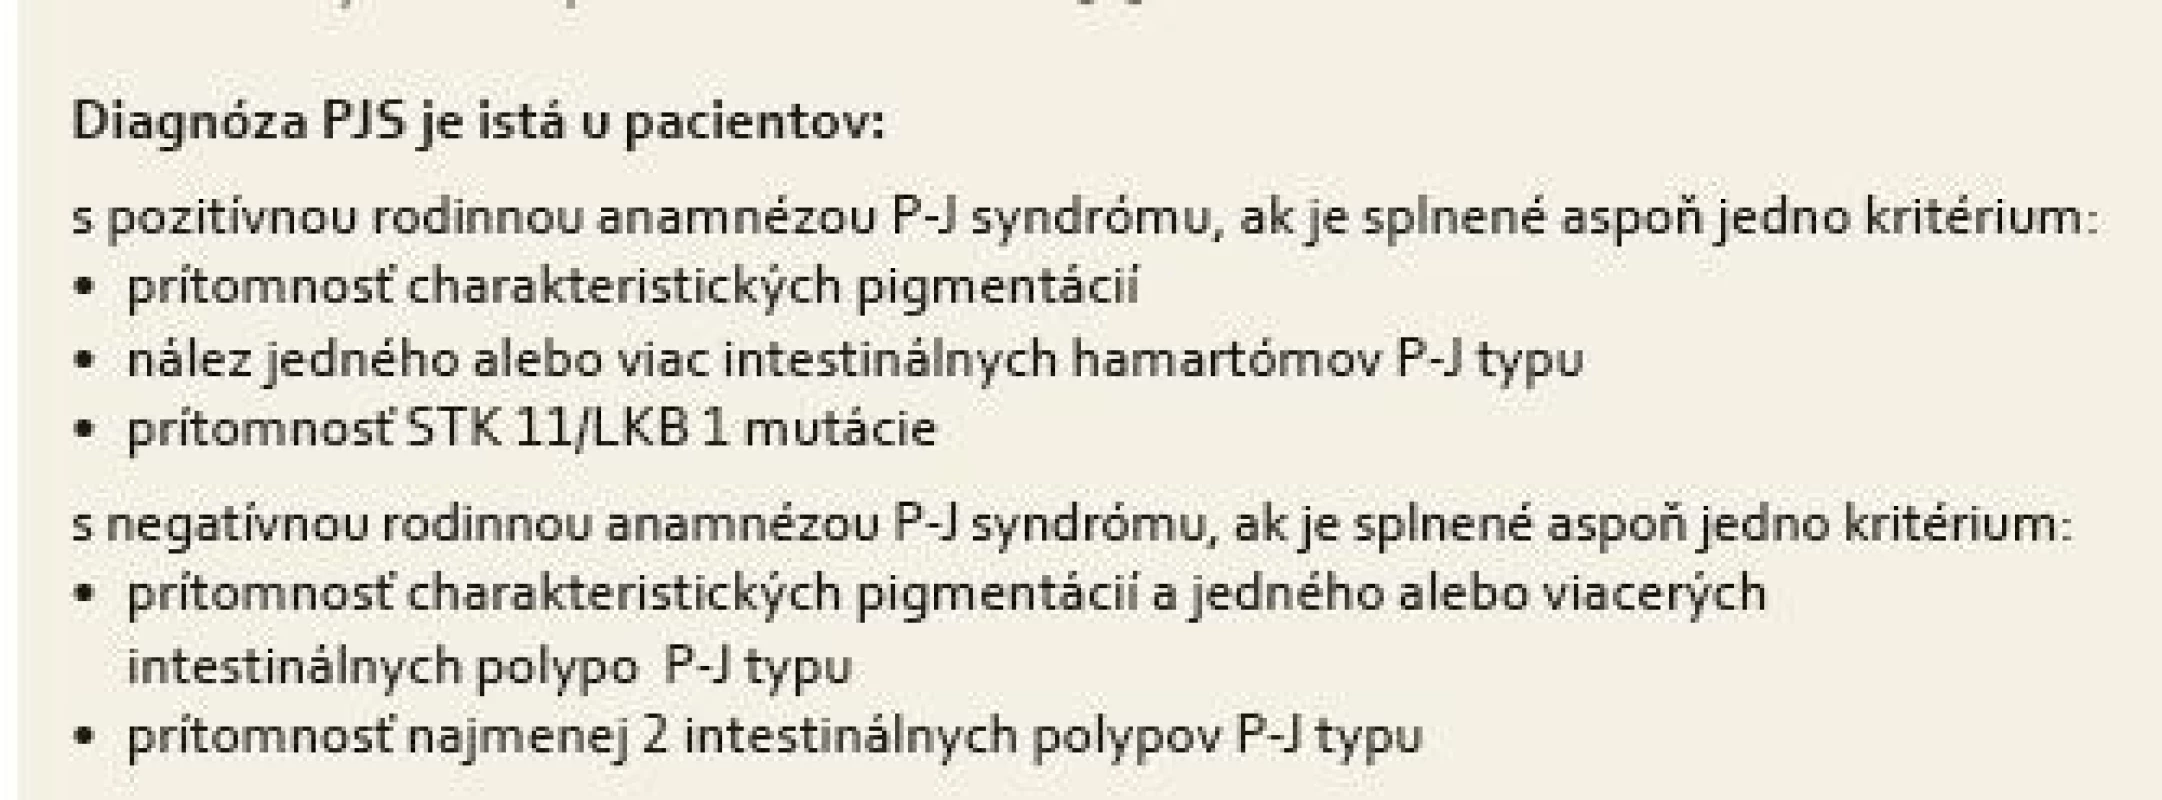 Diagnostické kritéria pre Peutz-Jeghersov syndróm modifikované podľa odporúčaní Mayo Clinic USA [1].
Tab. 1. Diagnostic criteria for Peutz-Jeghers syndrome; modified as recommended by the Mayo Clinic in the USA [1].